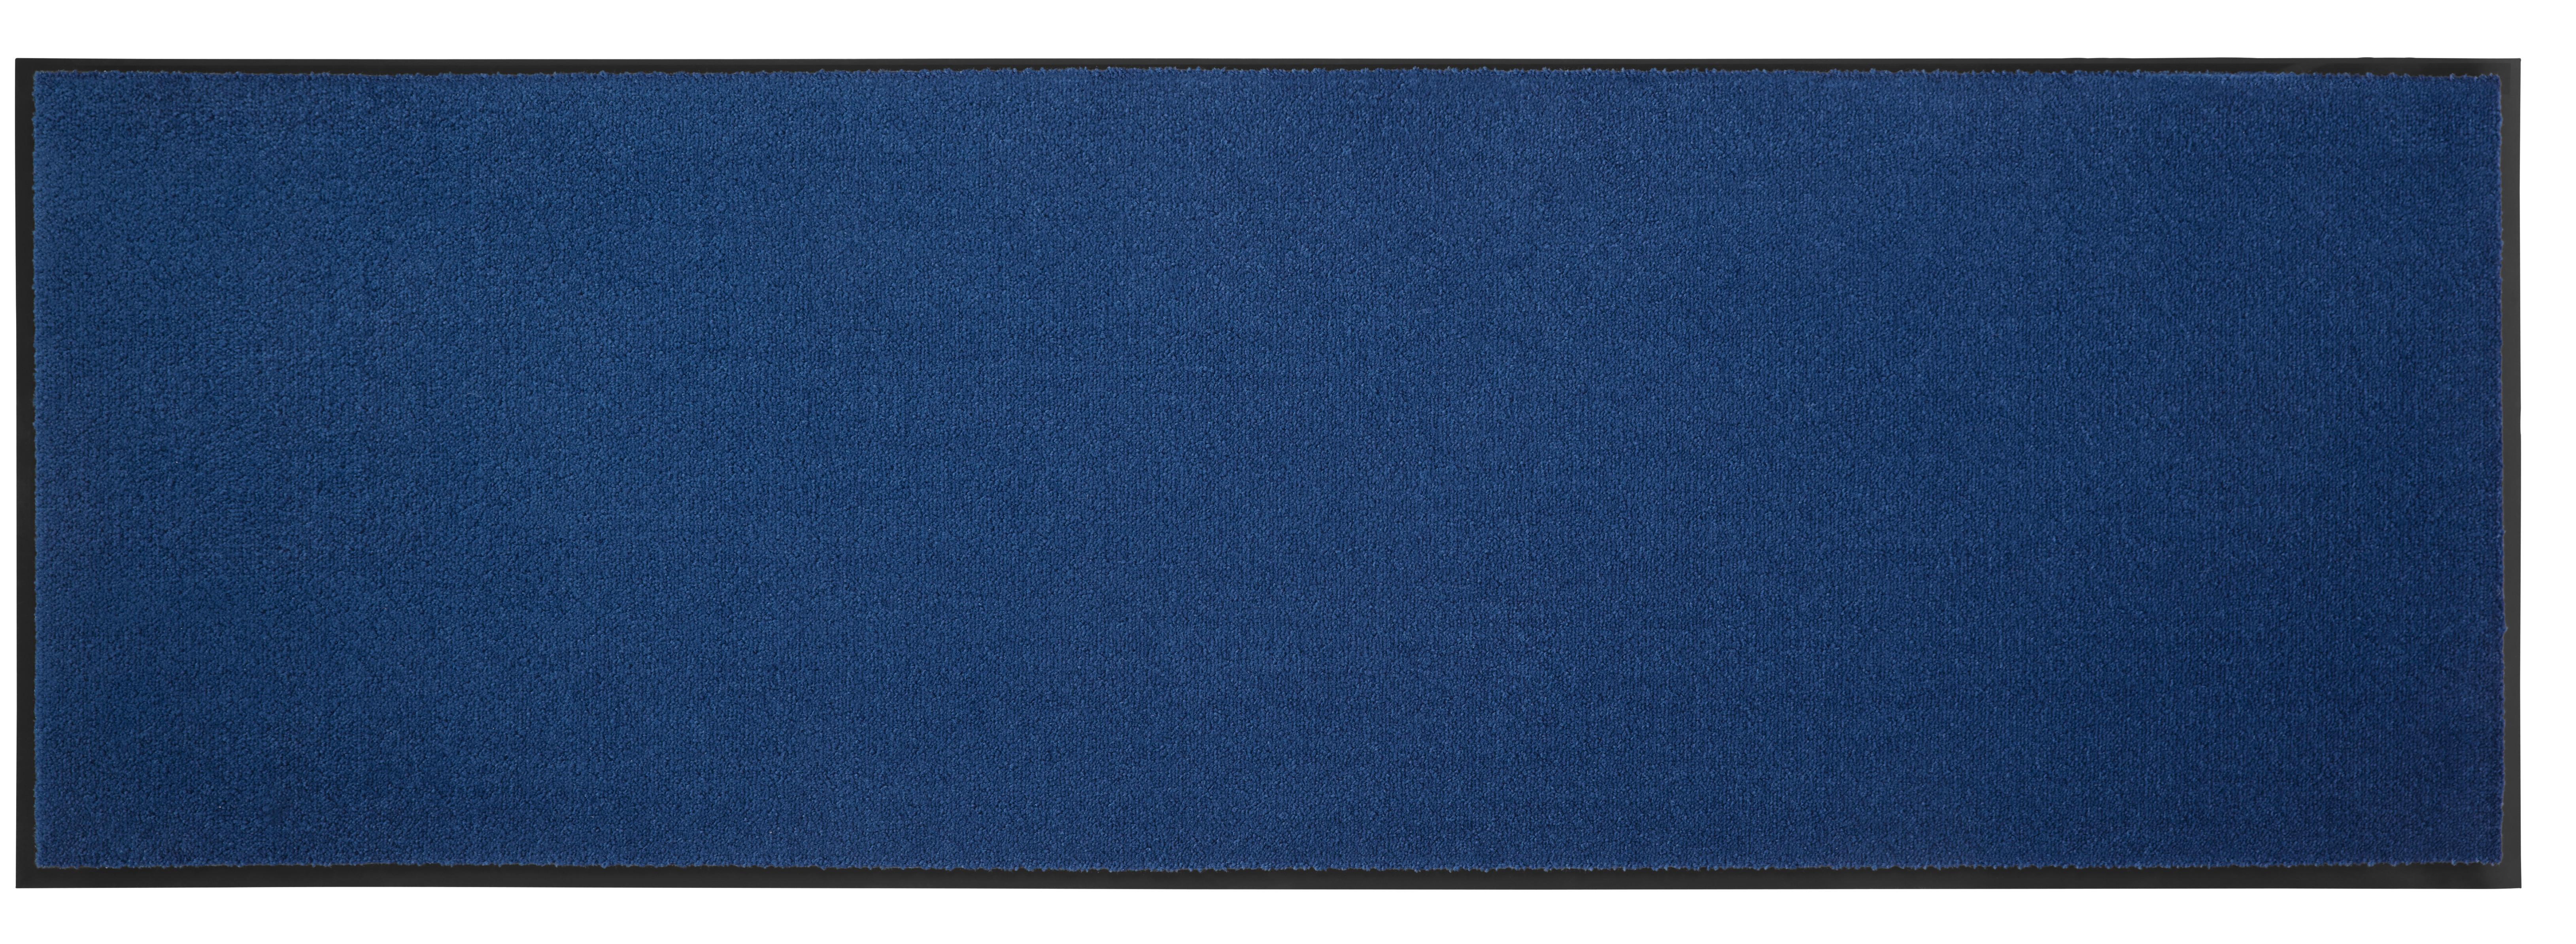 Futó Eton4 60/180cm - Kék, konvencionális, Textil (60/180cm) - Modern Living